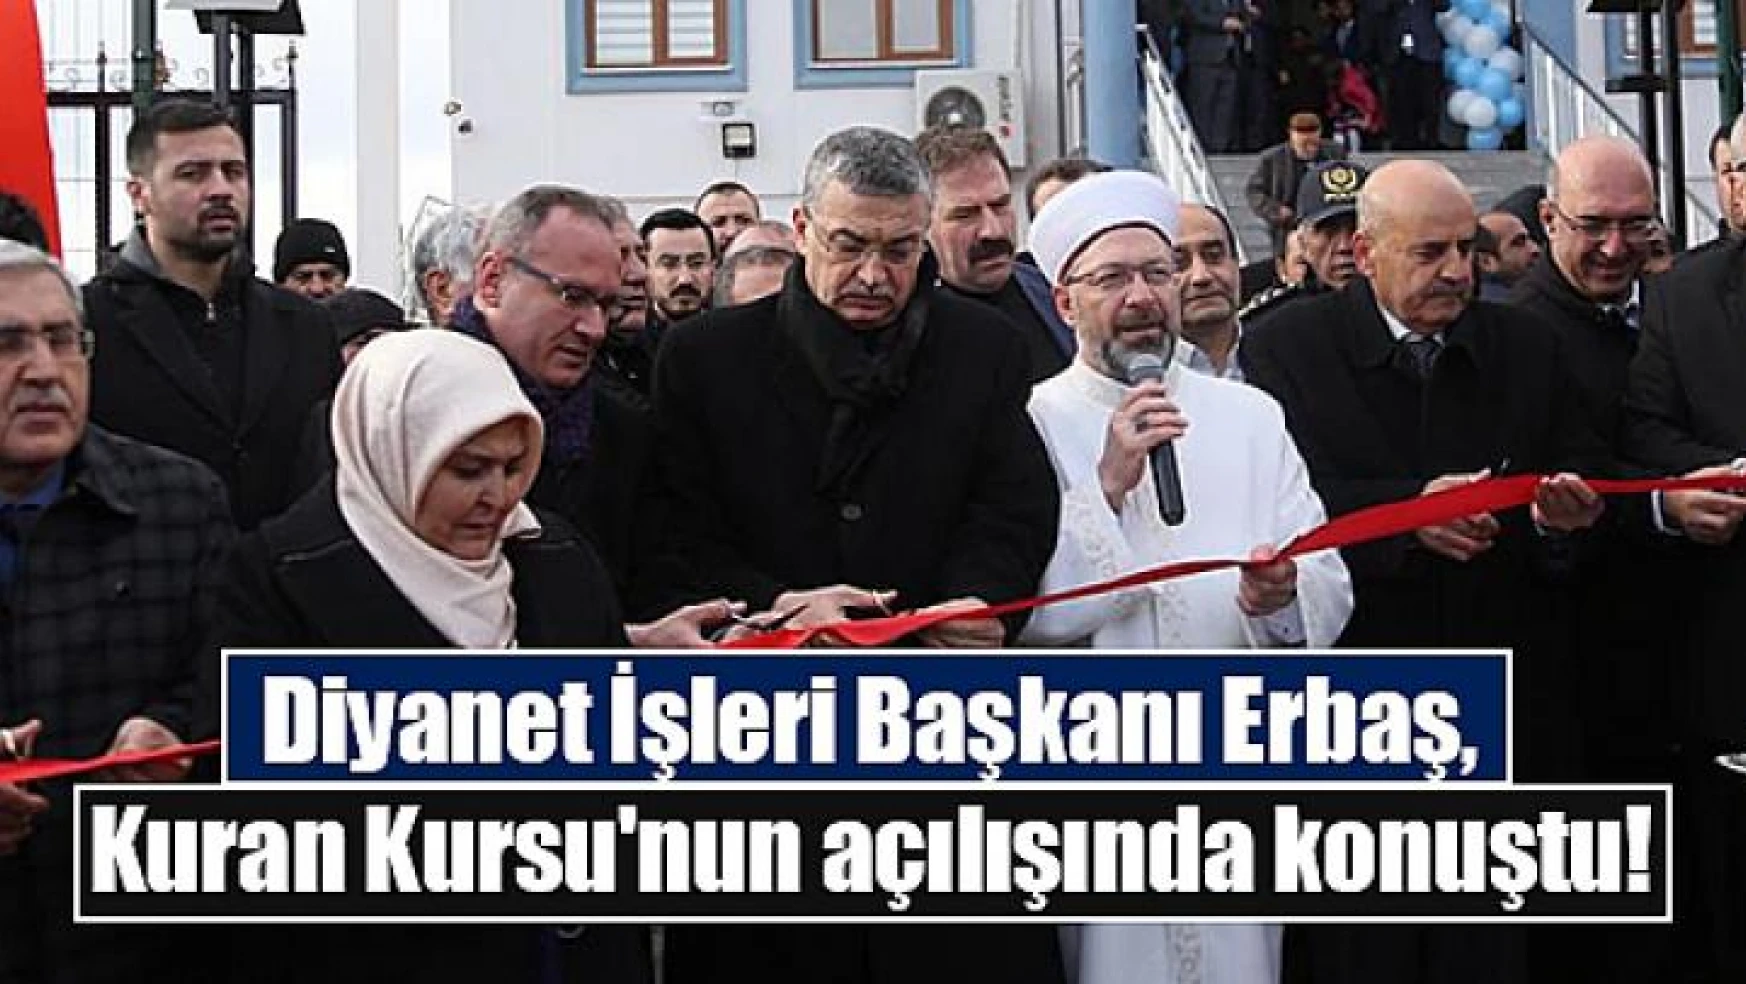 Diyanet İşleri Başkanı Erbaş, Kuran Kursu'nun açılışında konuştu!